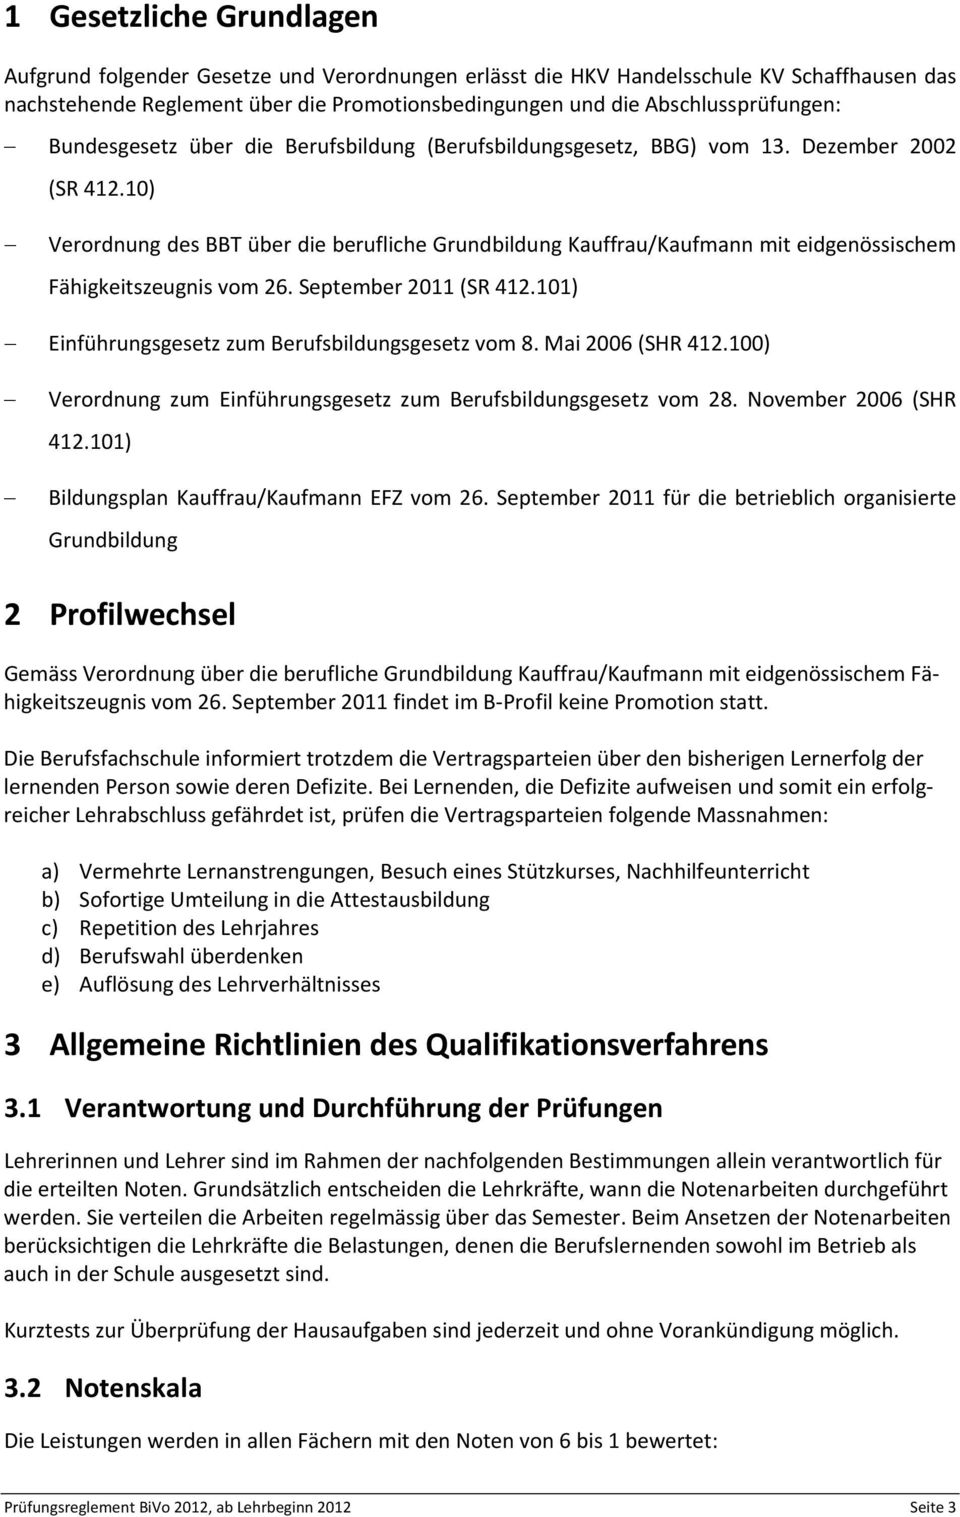 10) Verordnung des BBT über die berufliche Grundbildung Kauffrau/Kaufmann mit eidgenössischem Fähigkeitszeugnis vom 26. September 2011 (SR 412.101) Einführungsgesetz zum Berufsbildungsgesetz vom 8.